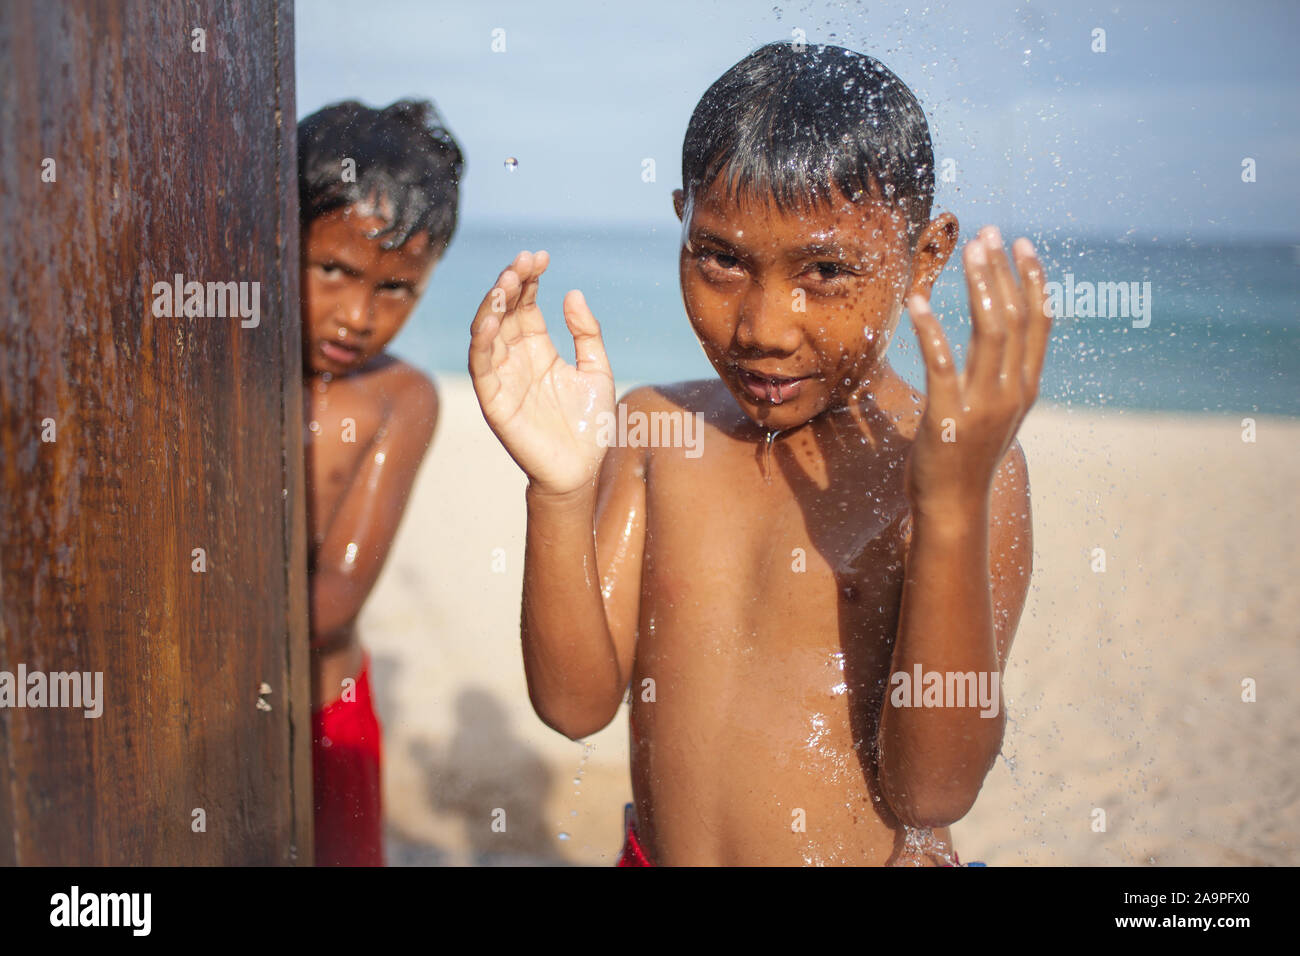 Sanur, Bali Indonesia - 22 febbraio 2013. Ritratto di ragazzi piccoli tenendo doccia sulla spiaggia, bambina carina con piacere rinfrescante in acqua fredda Foto Stock